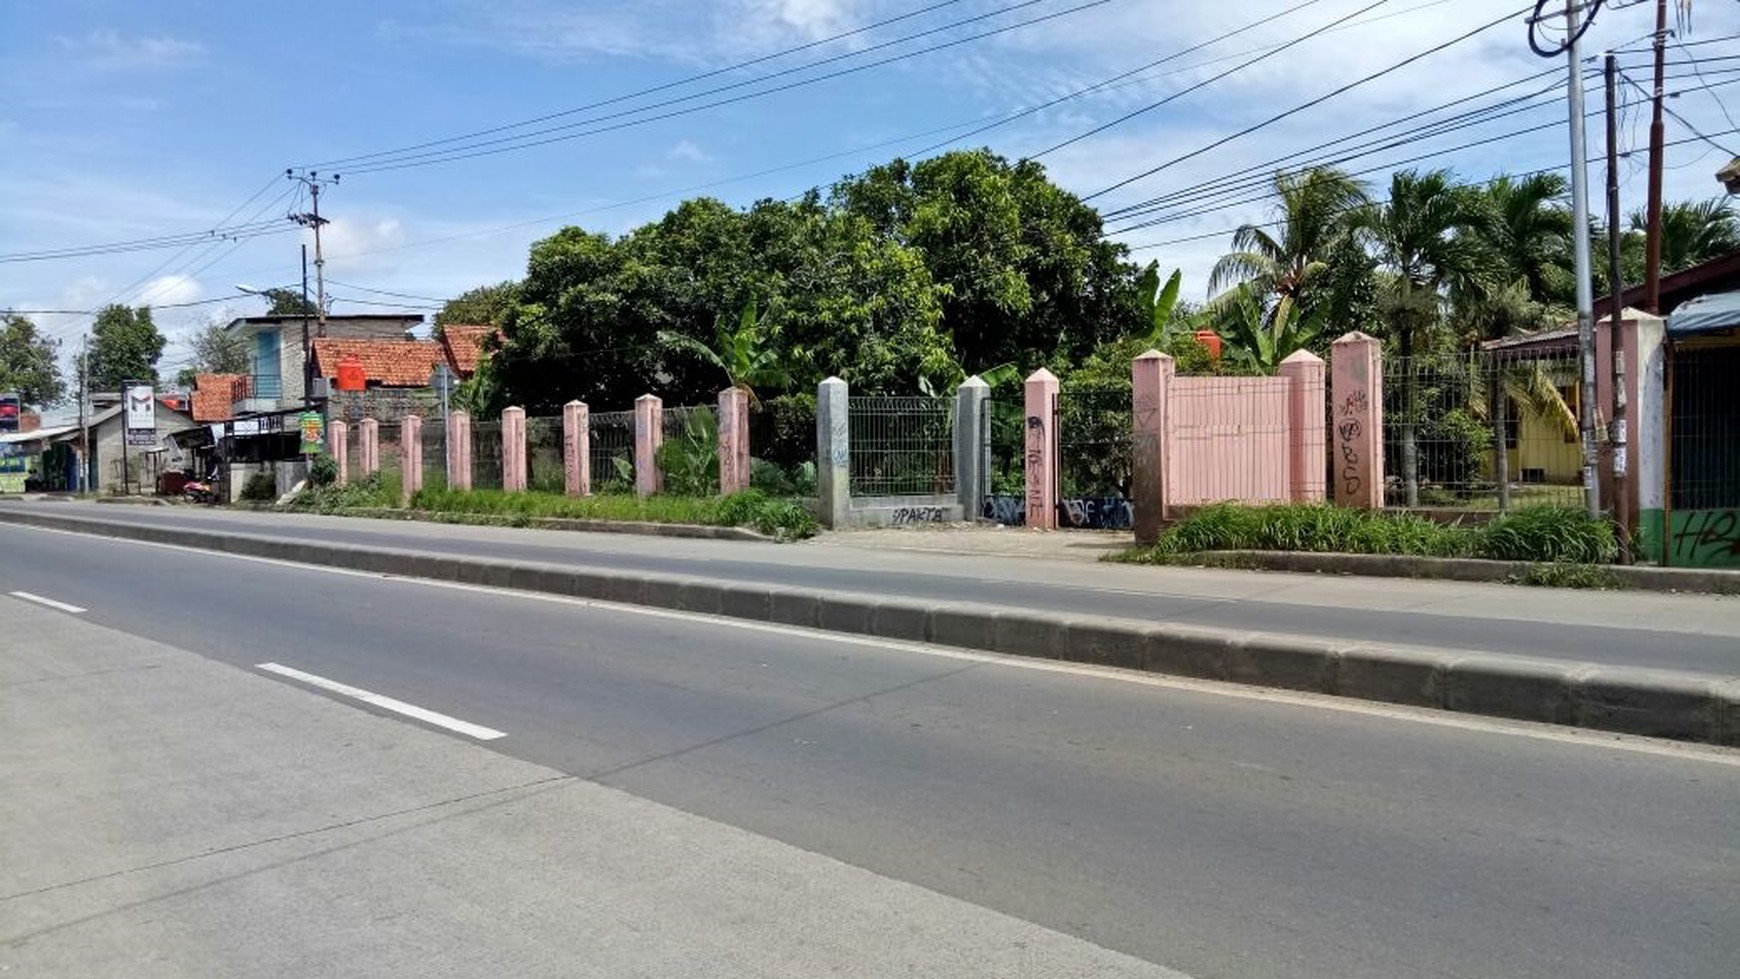 Tanah strategis dan jarang ada,sangat cocok utk bangunan komersil/perumahan/gudang,terletak dipinggir jalan Raya Parung, Bogor